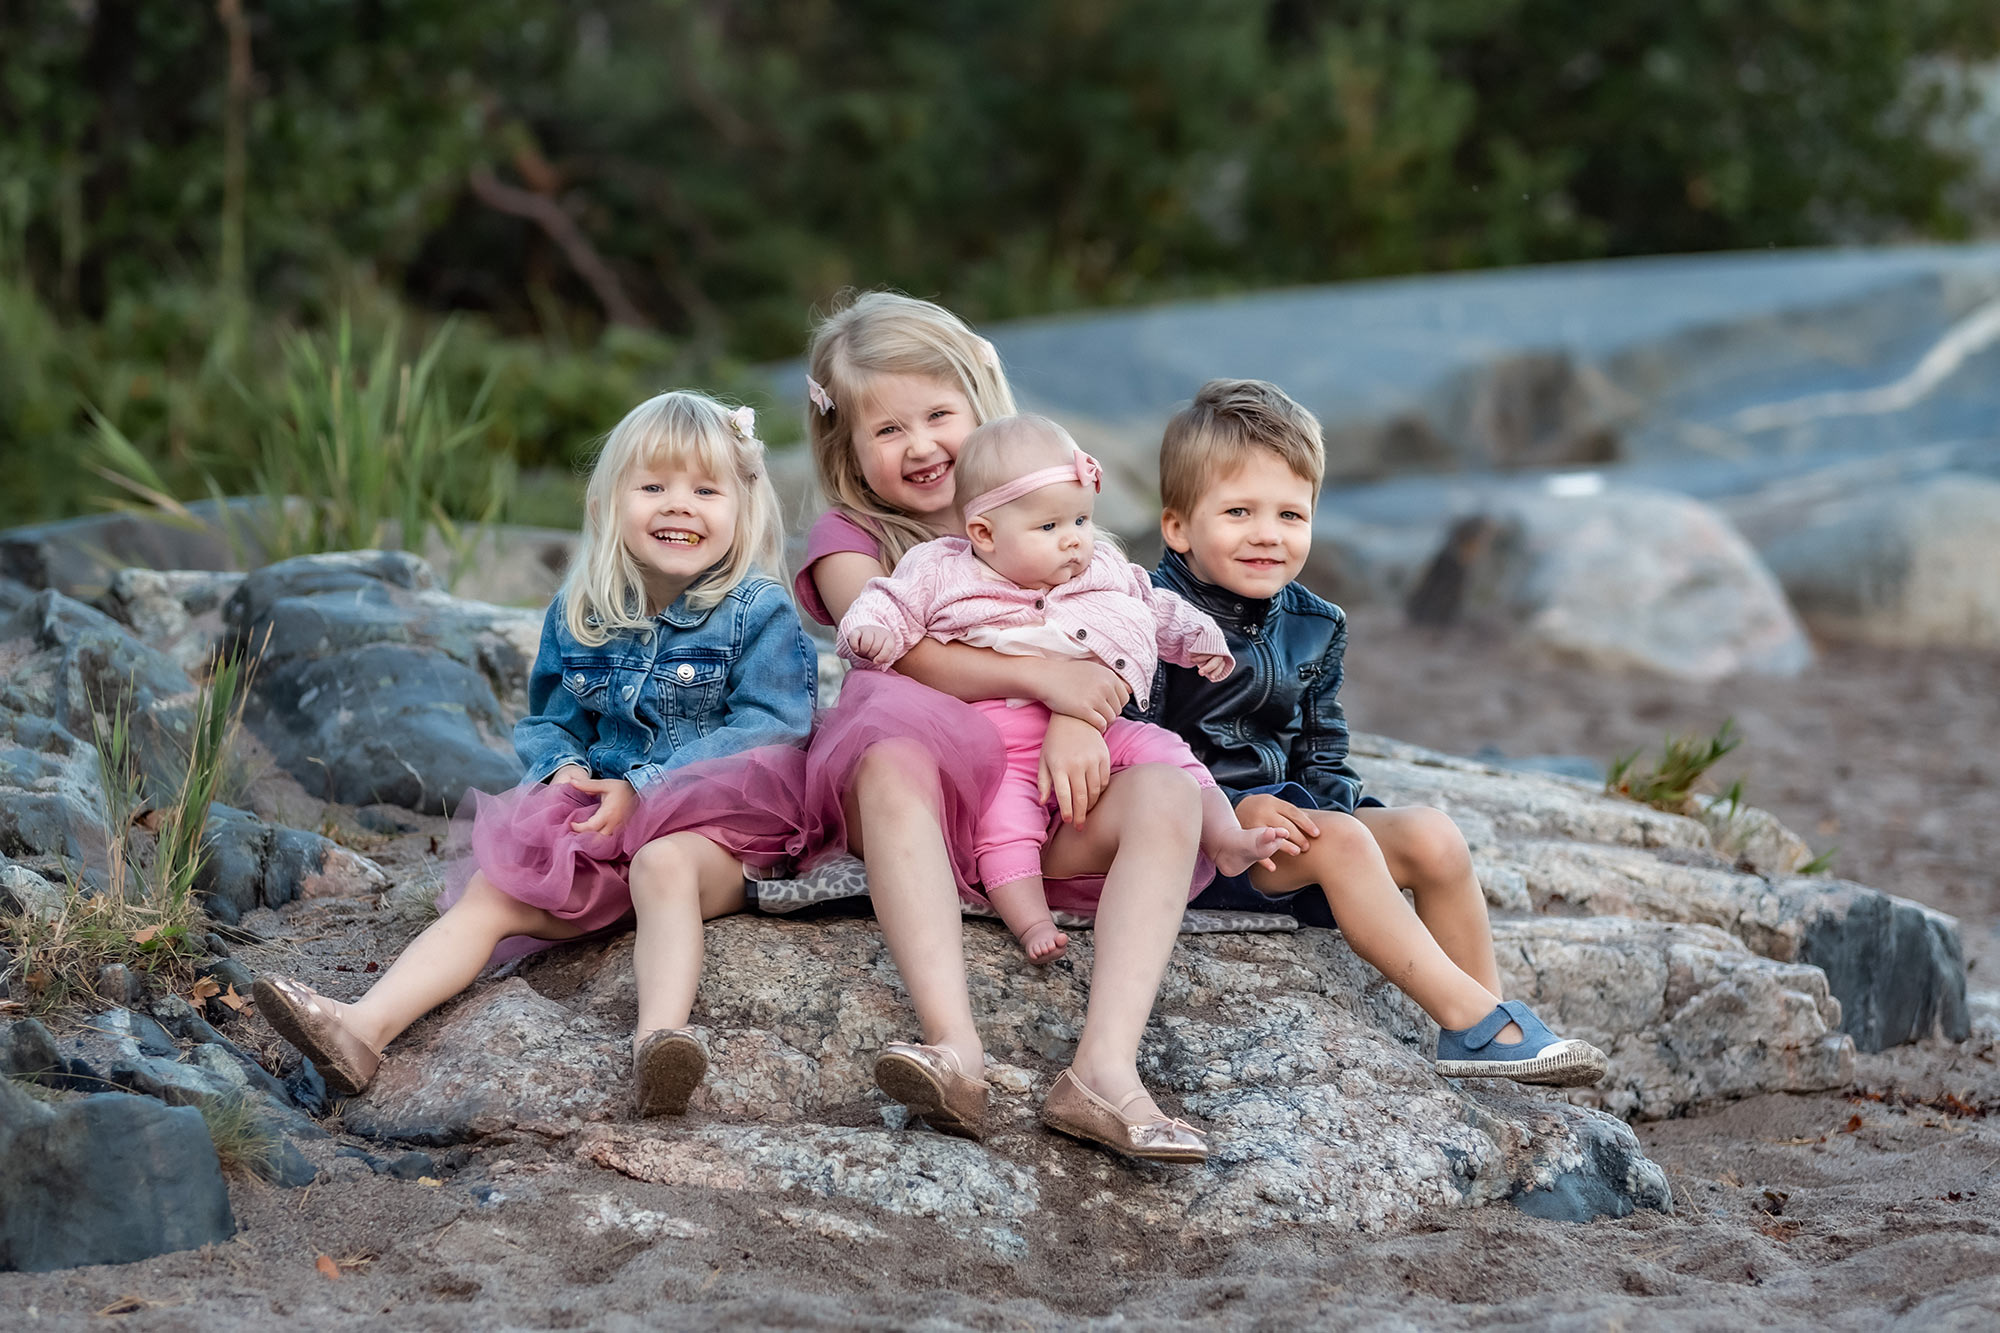 Fyra små syskon sitter på en sten och tittar in i kameran.